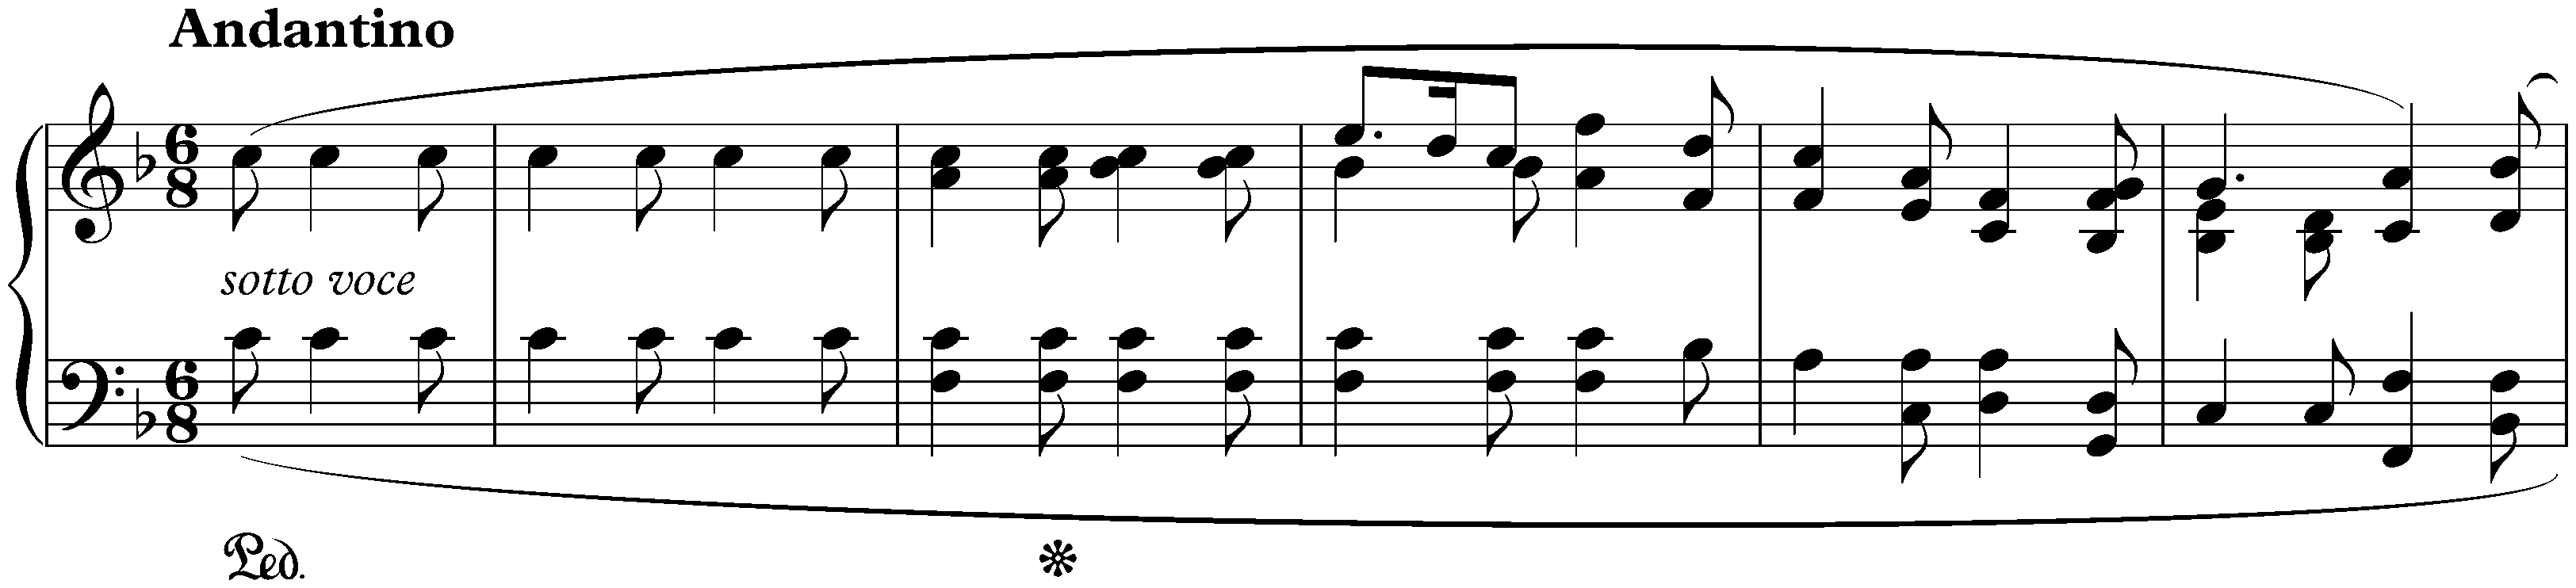 Ballade no. 2 in F major, op. 38